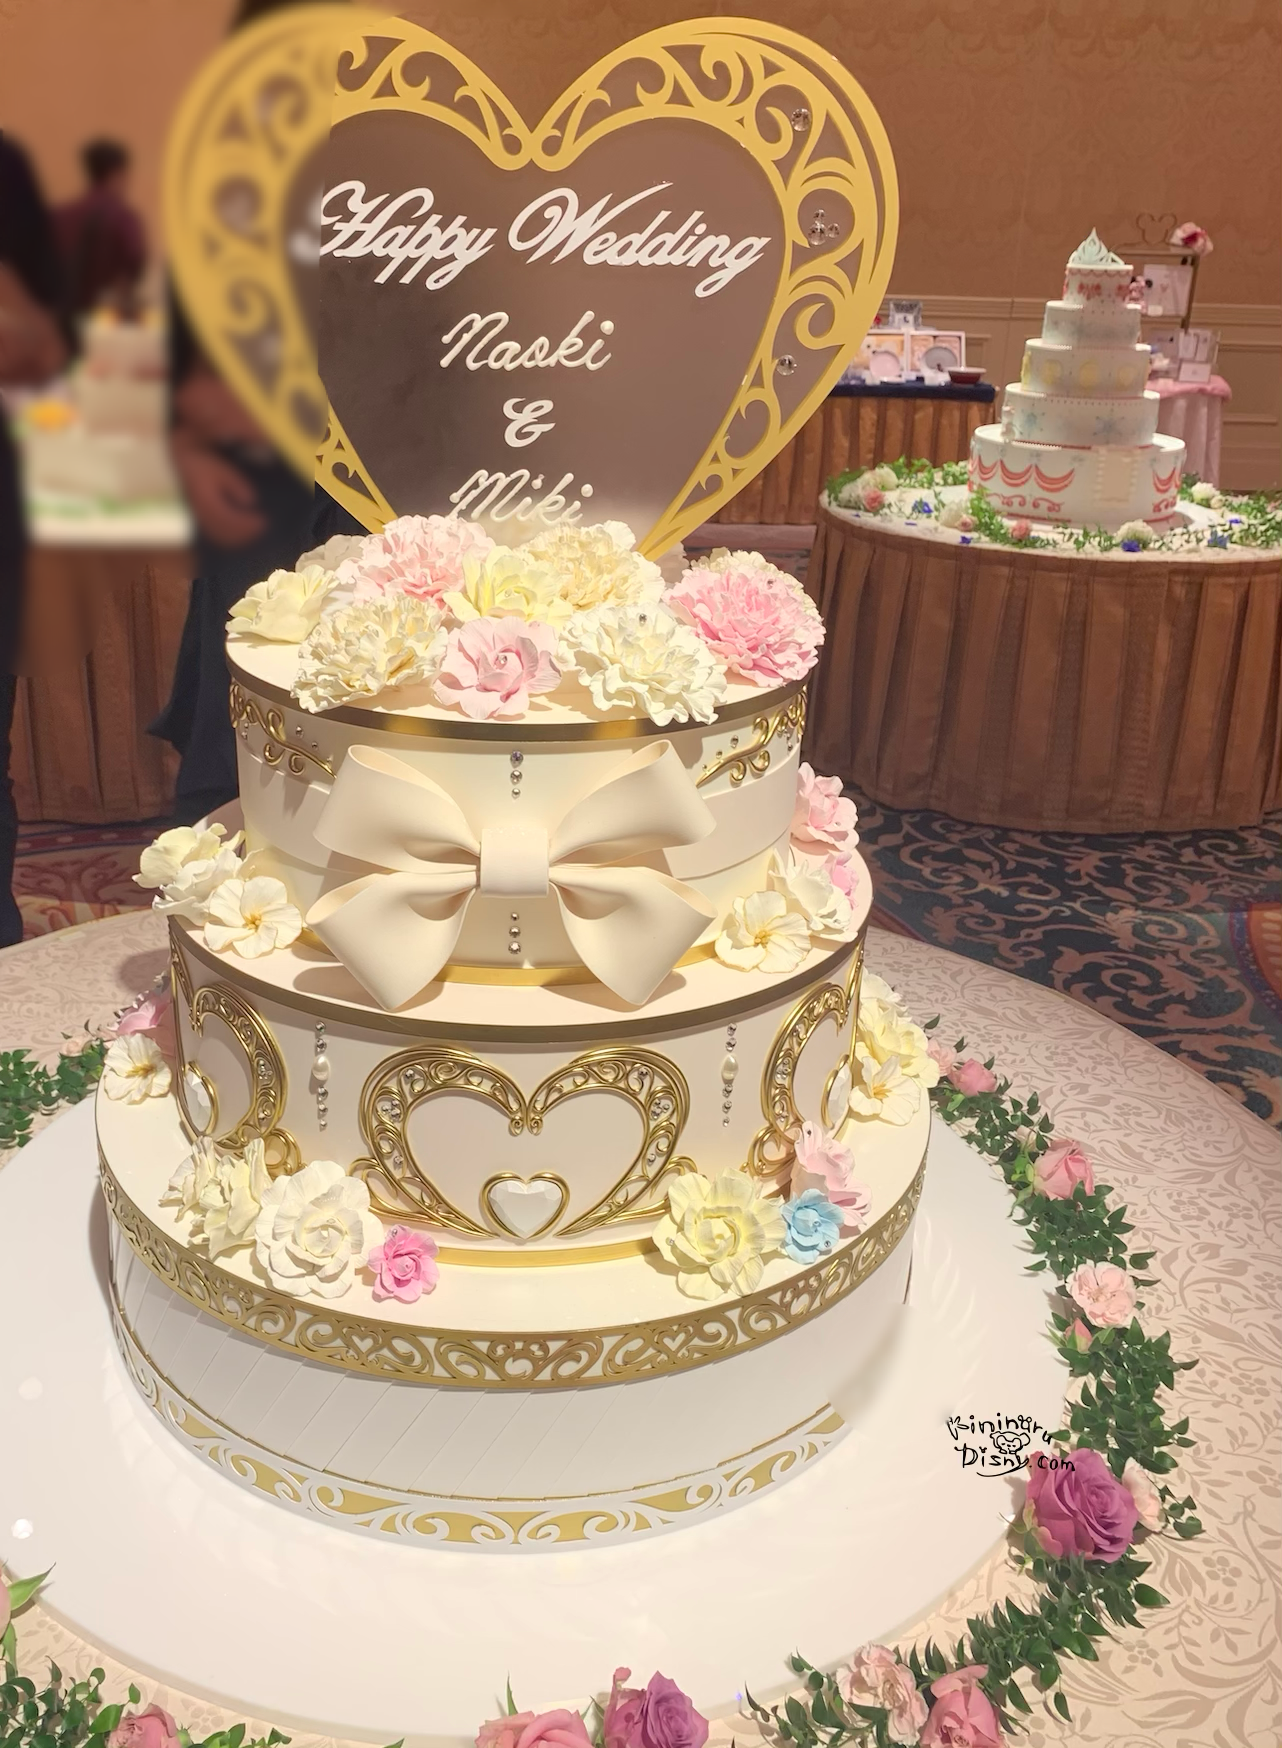 ミラコスタ結婚式 ウェディングケーキはどんなのがある 写真付きでまとめてご紹介します 気になるディズニーブログ